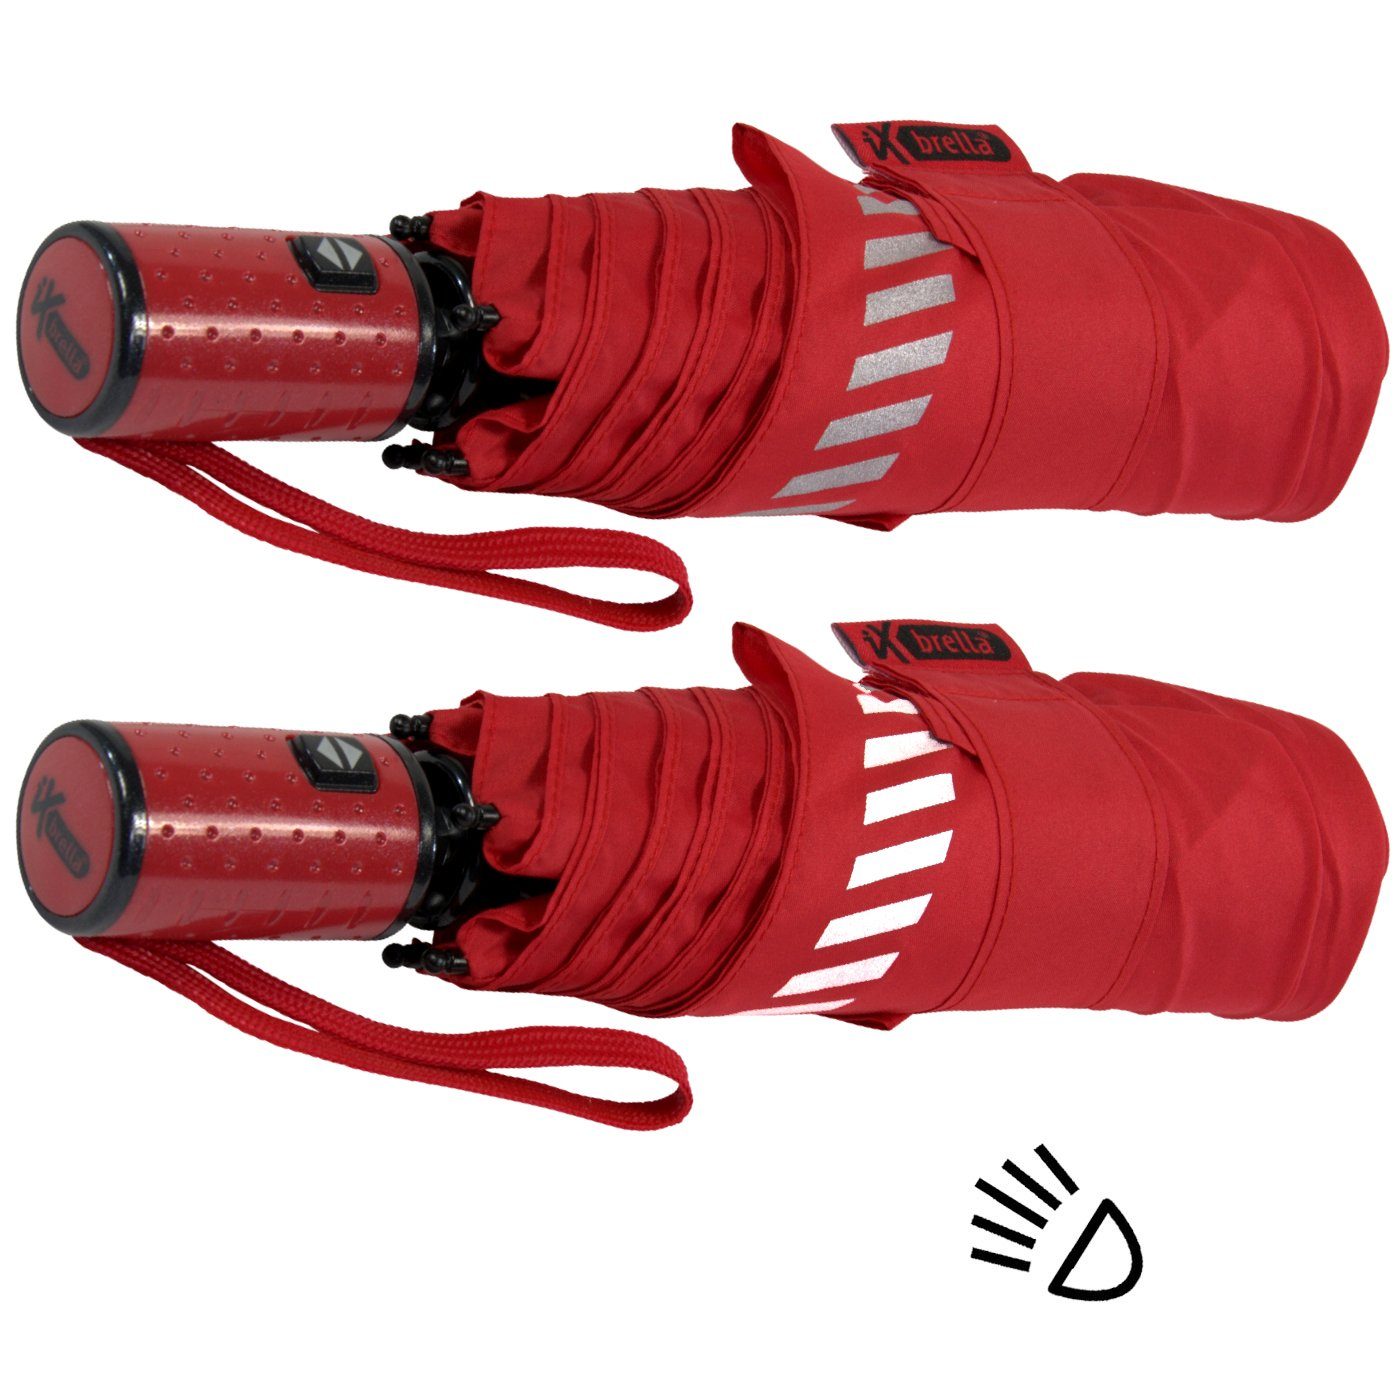 durch - rot Sicherheit Kinderschirm reflektierend, iX-brella mit Auf-Zu-Automatik, Reflex-Streifen Taschenregenschirm